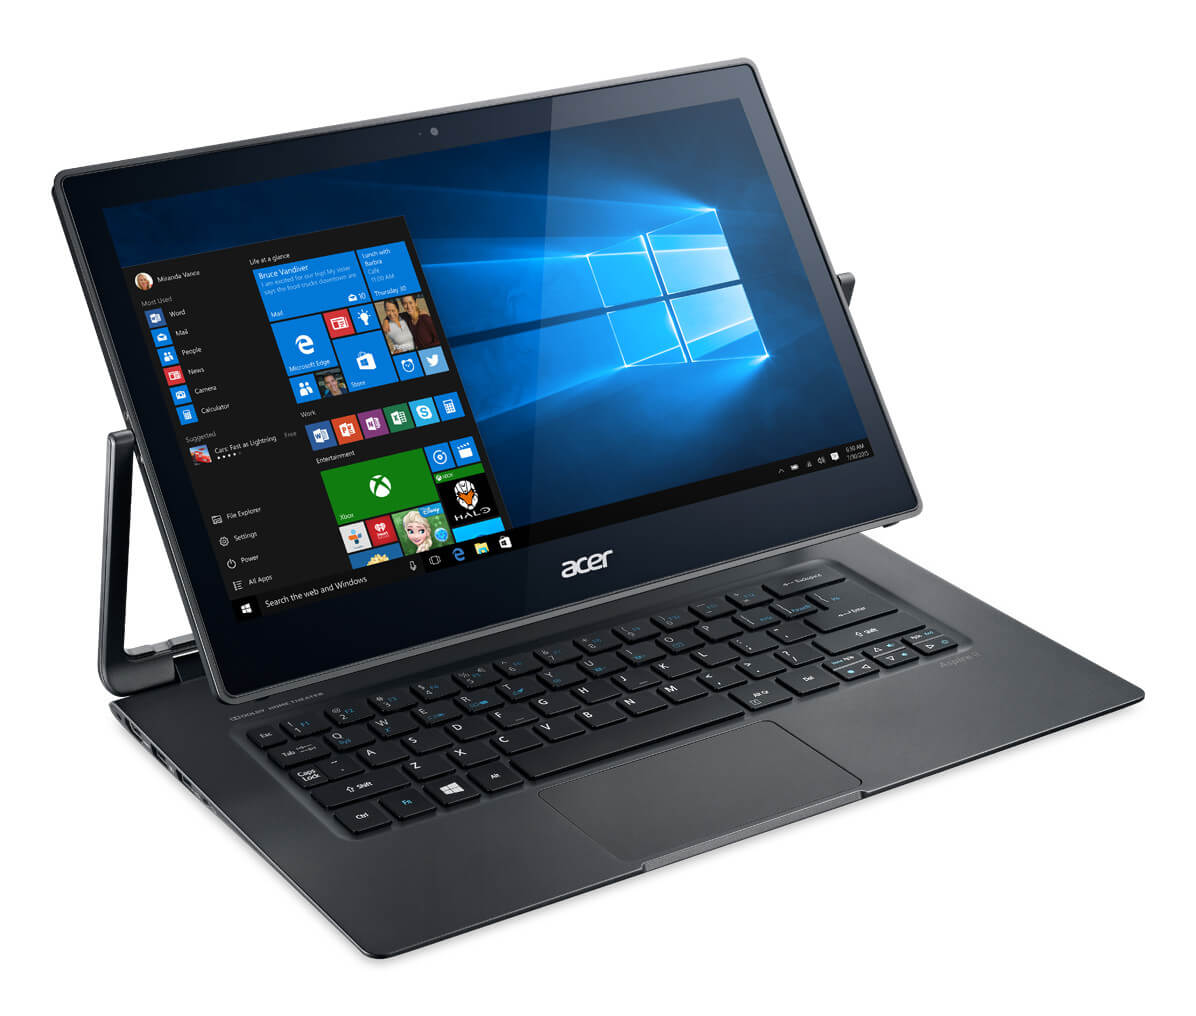 Acer представила моноблок и ноутбук на Windows 10